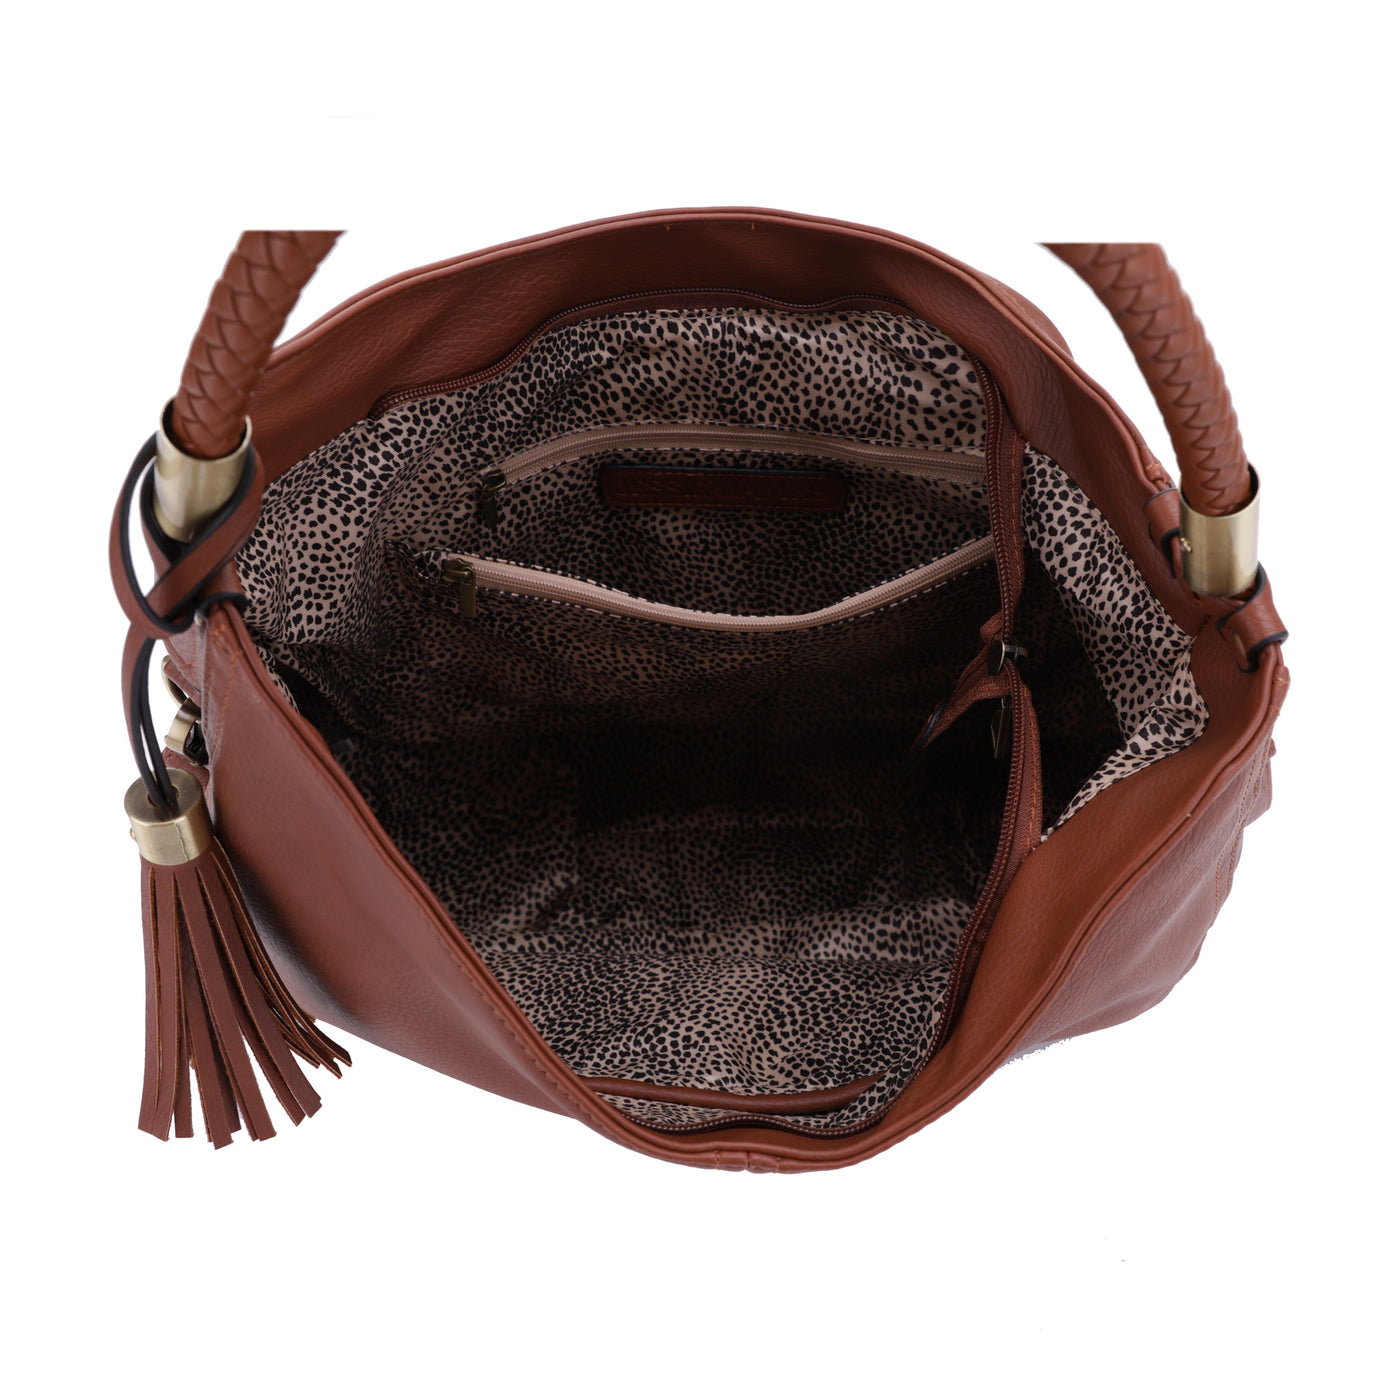 Sienna Concealed Carry Lock and Key Tassel Hobo Shoulder Bag